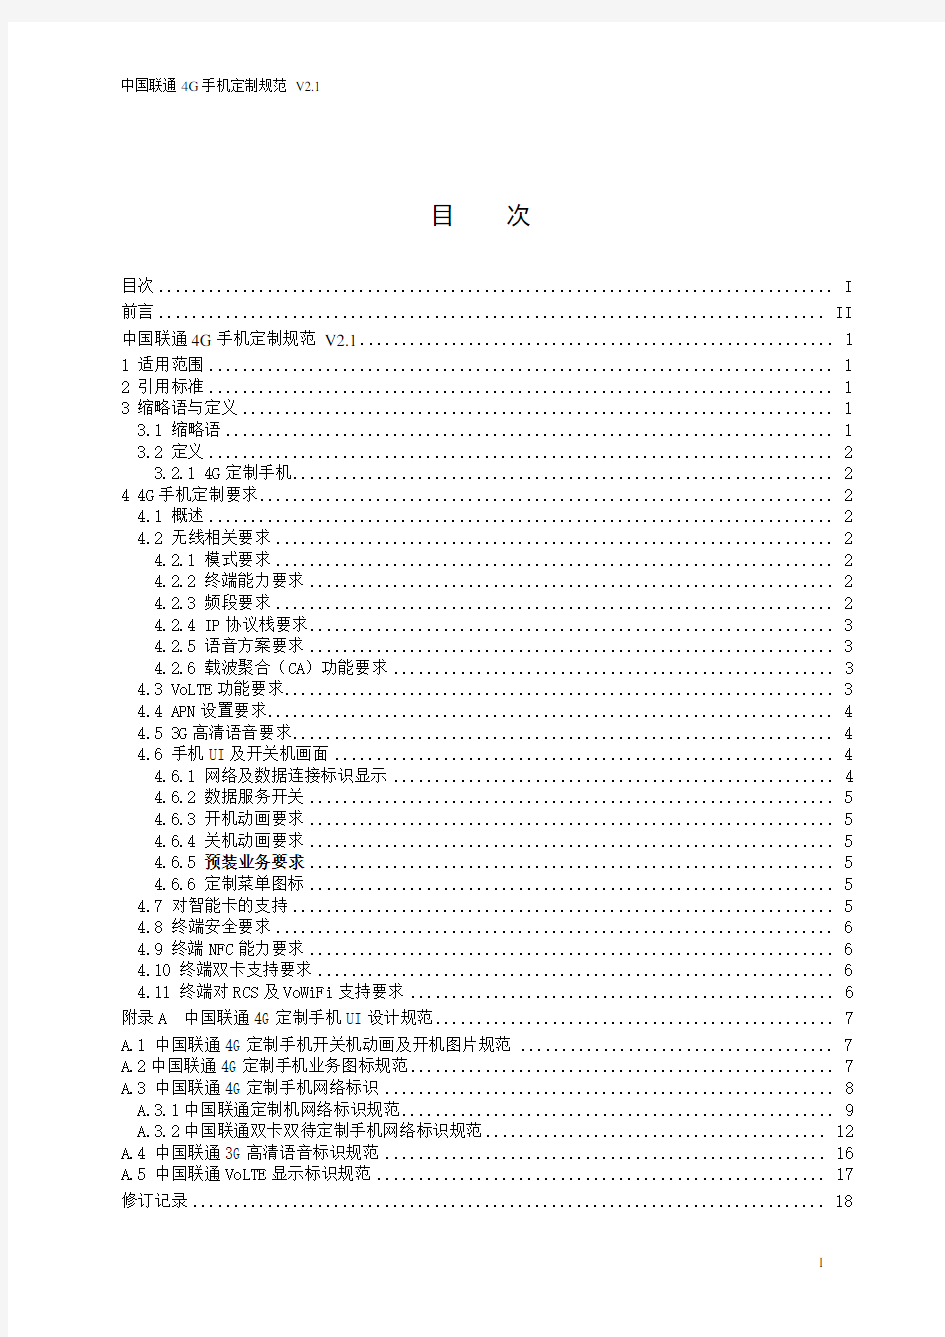 中国联通4G手机定制规范v2.1报告